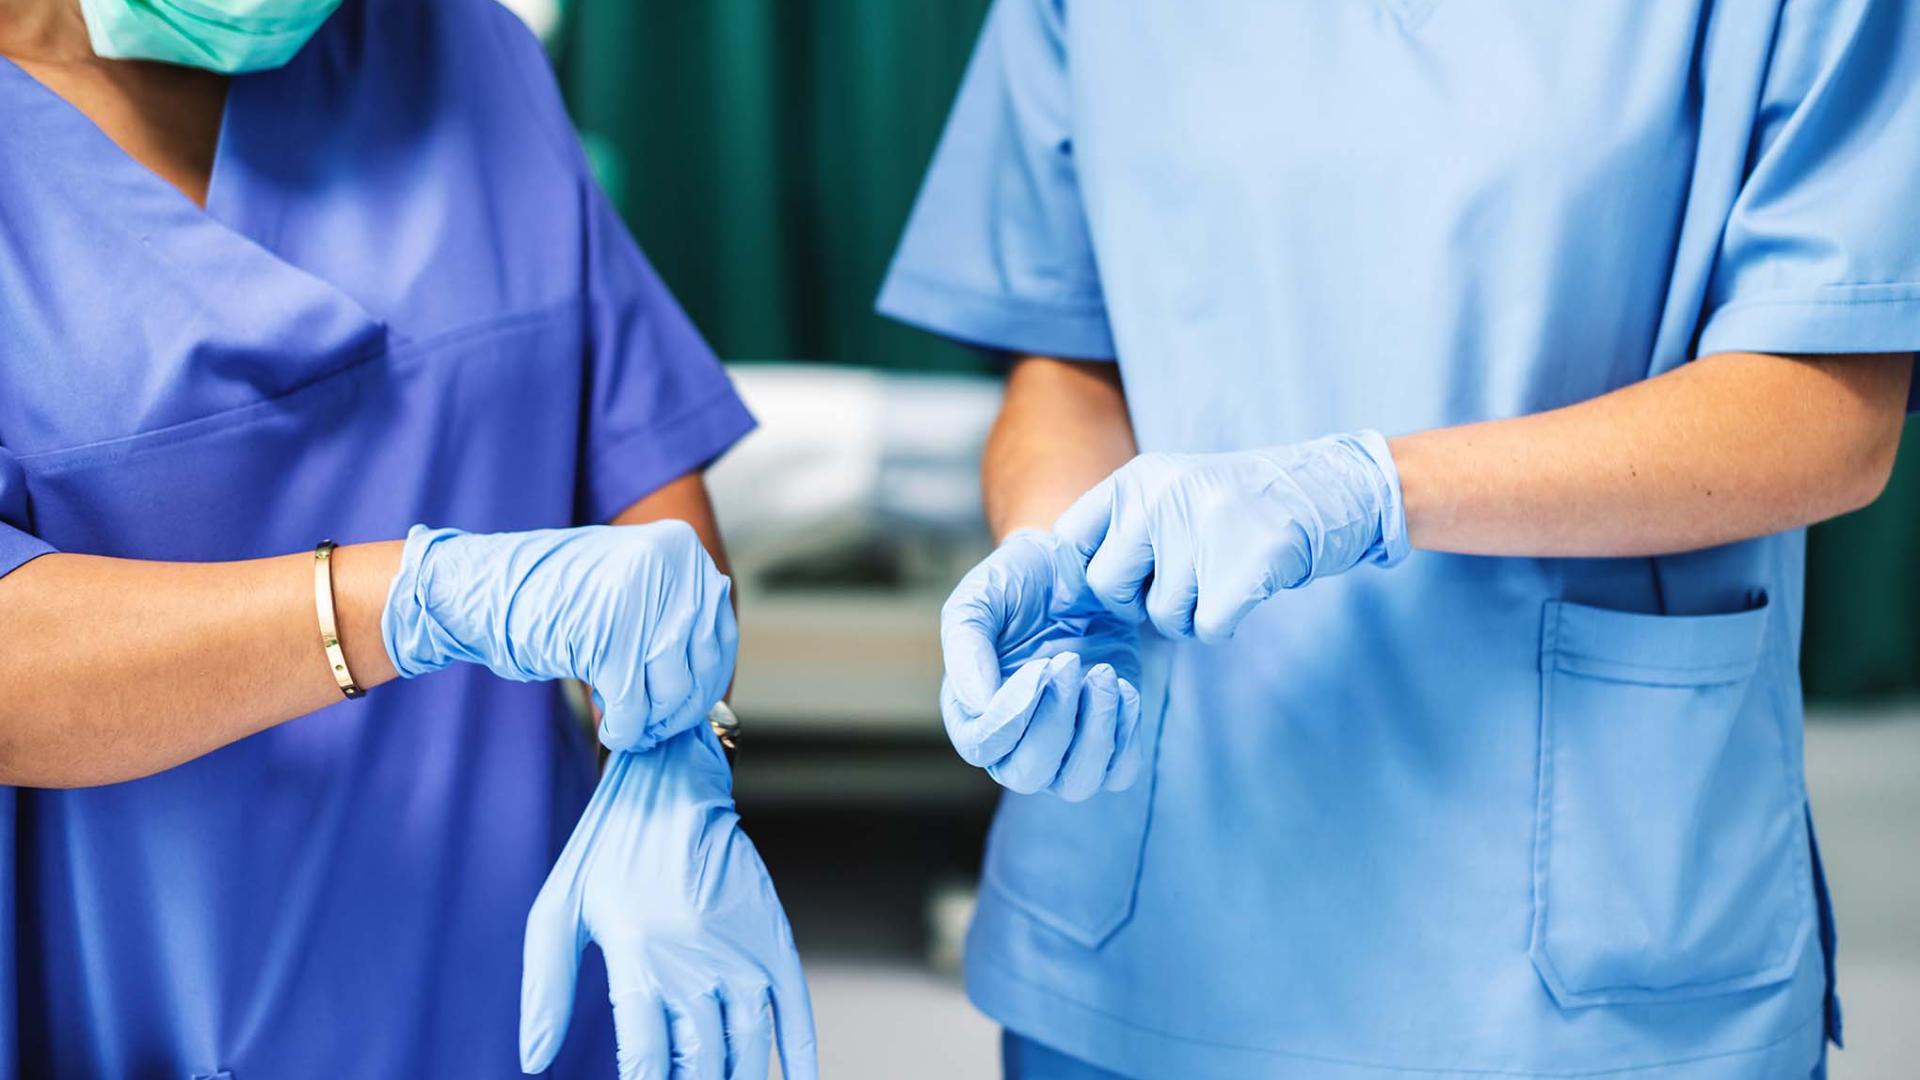 NHS workers in scrubs